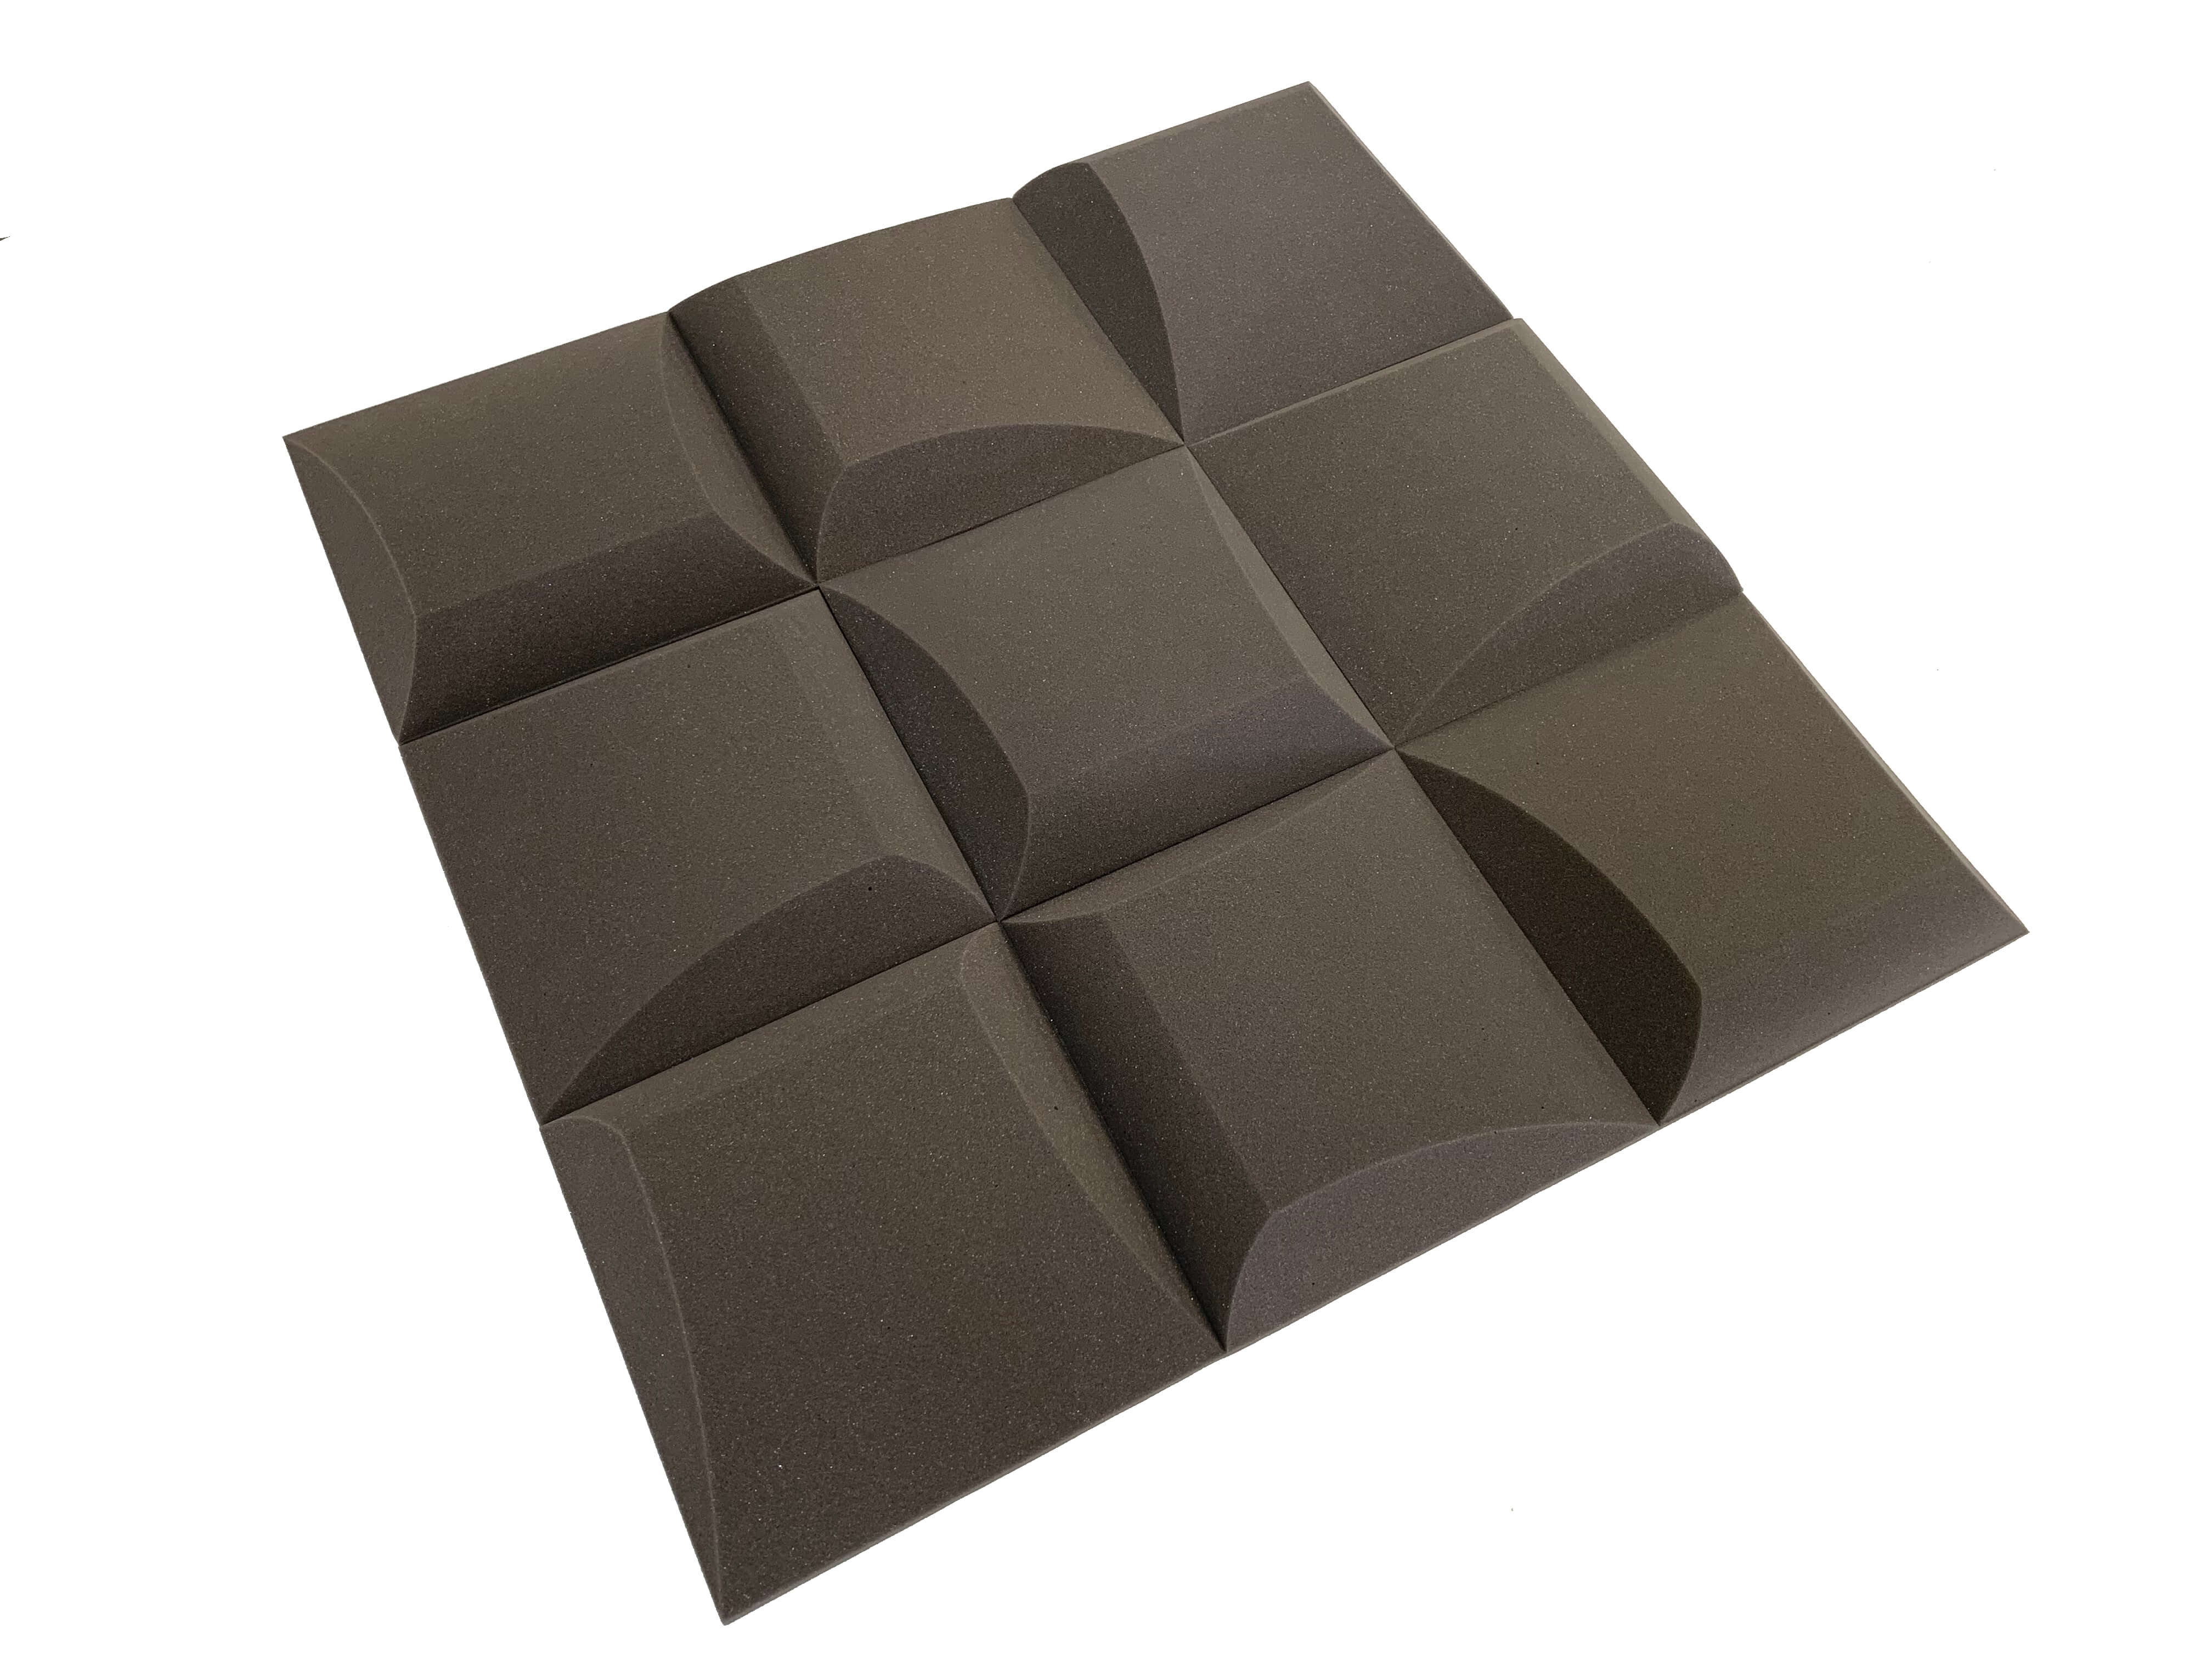 AeroFoil 12" Acoustic Studio Foam Tile Pack - 12 Tiles, 1.1qm Coverage-13